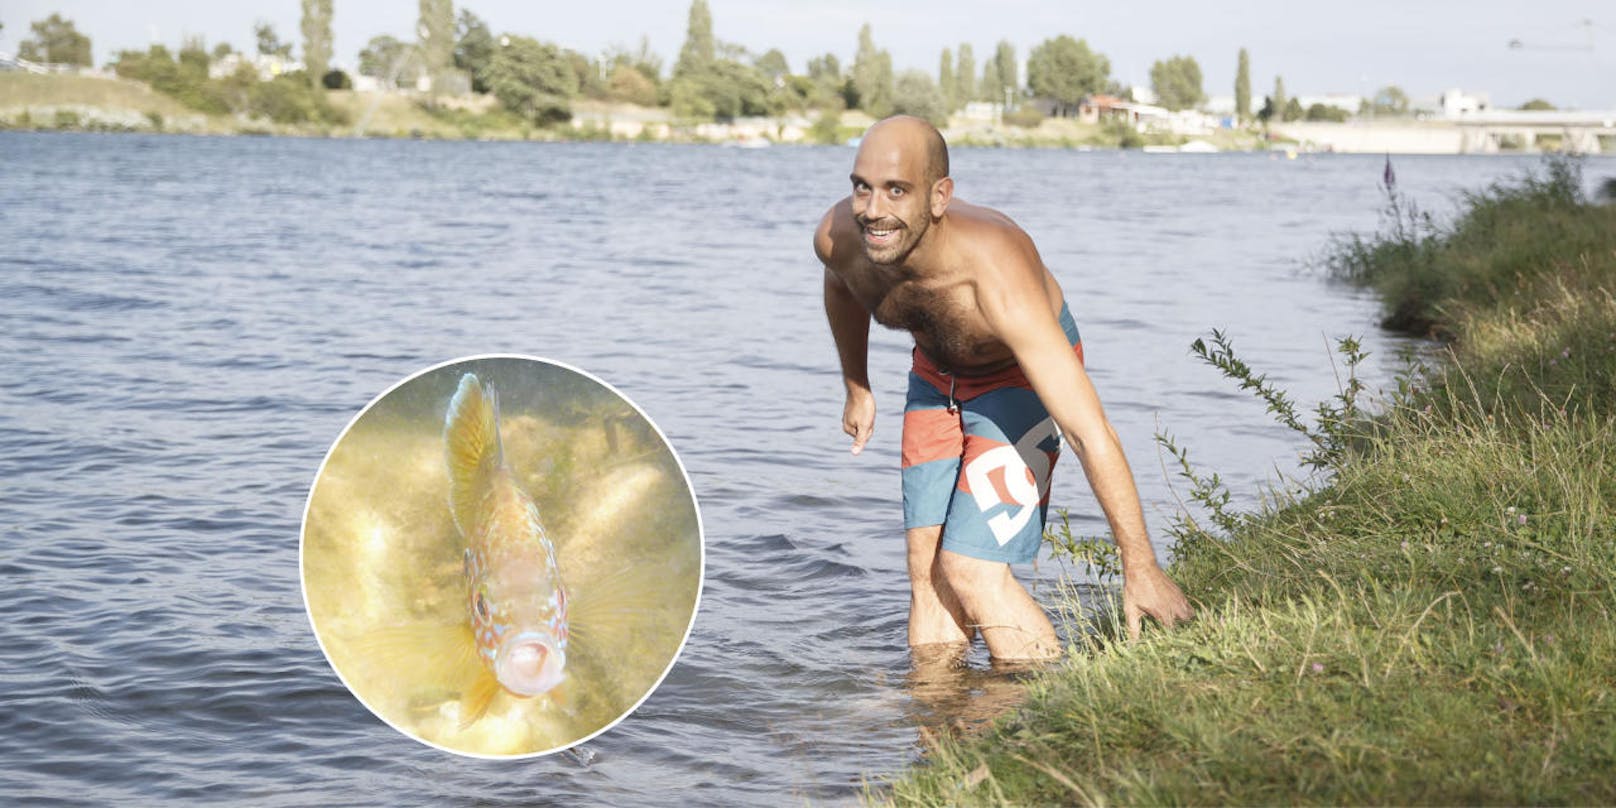 <b>Juli: "Donau_Piranhas" knabbern Schwimmer an
</b>Cristoph Sommer machte eine erstaunliche Begegnung, als er im Sommer in die Donau schwimmen ging. Ein Fisch knabberte ihn an!  <a href="https://www.heute.at/oesterreich/wien/story/Autsch--Fische-knabbern-Zehen-der-Schwimmer-an-53666958">Hier geht's zur Geschichte</a>